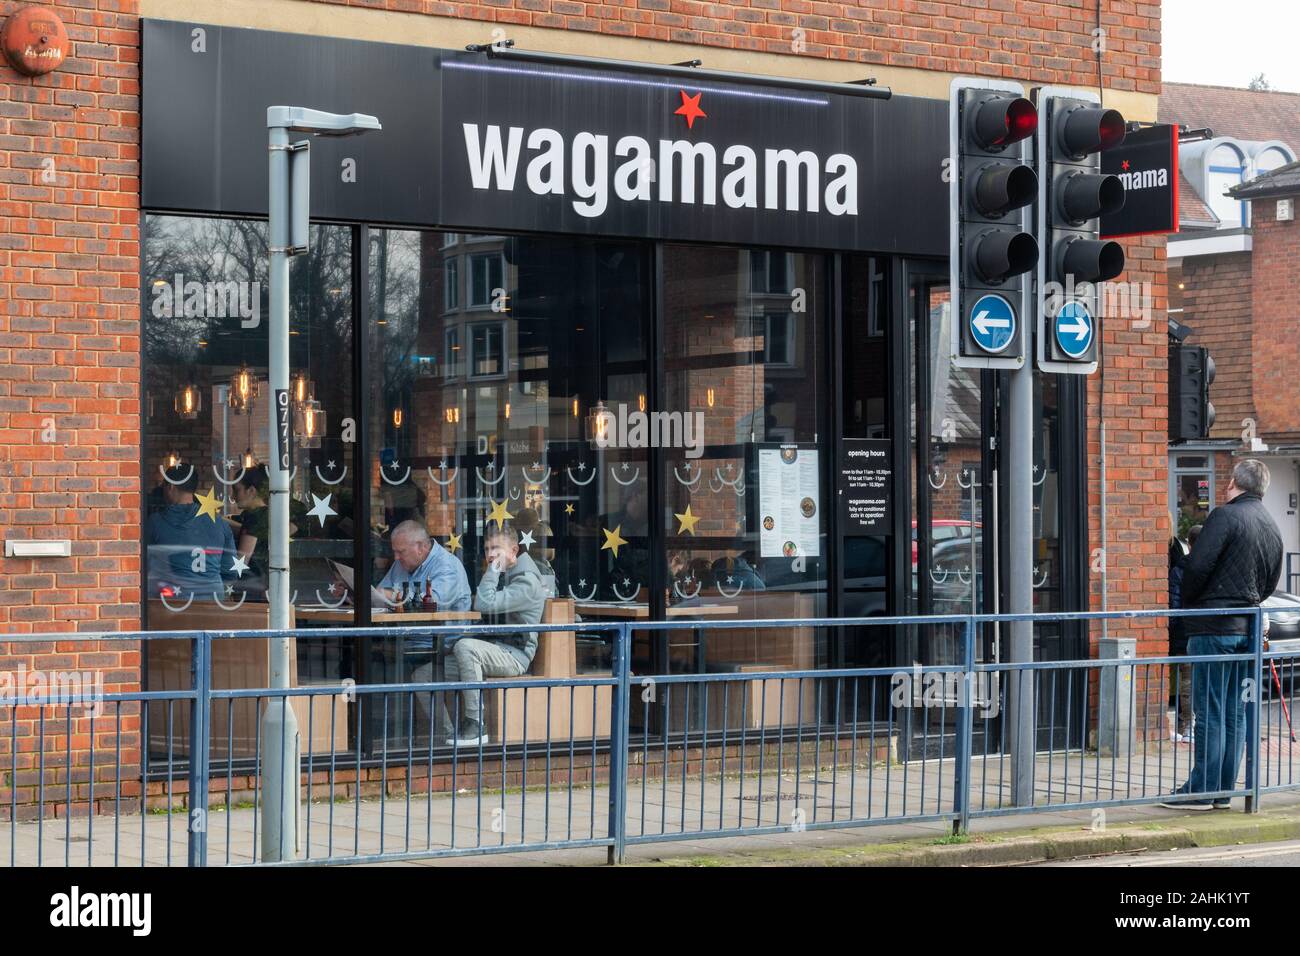 Restaurante Wagamama delantero, especializado en comida asiática y cocina japonesa, UK Foto de stock